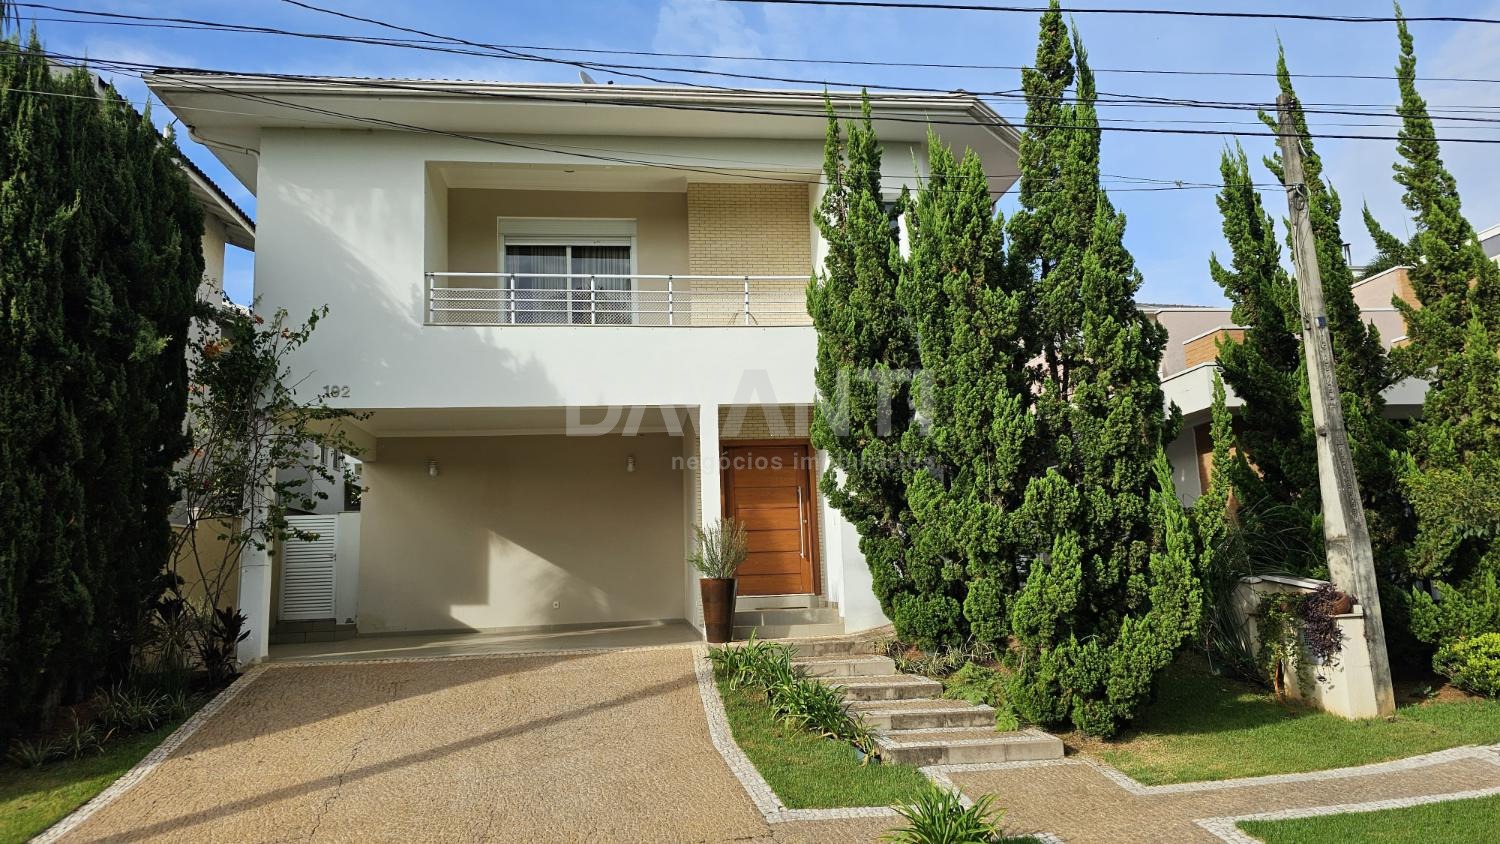 CA122129 | Casa aluguel Condomínio Morada das Nascentes | Valinhos/SP